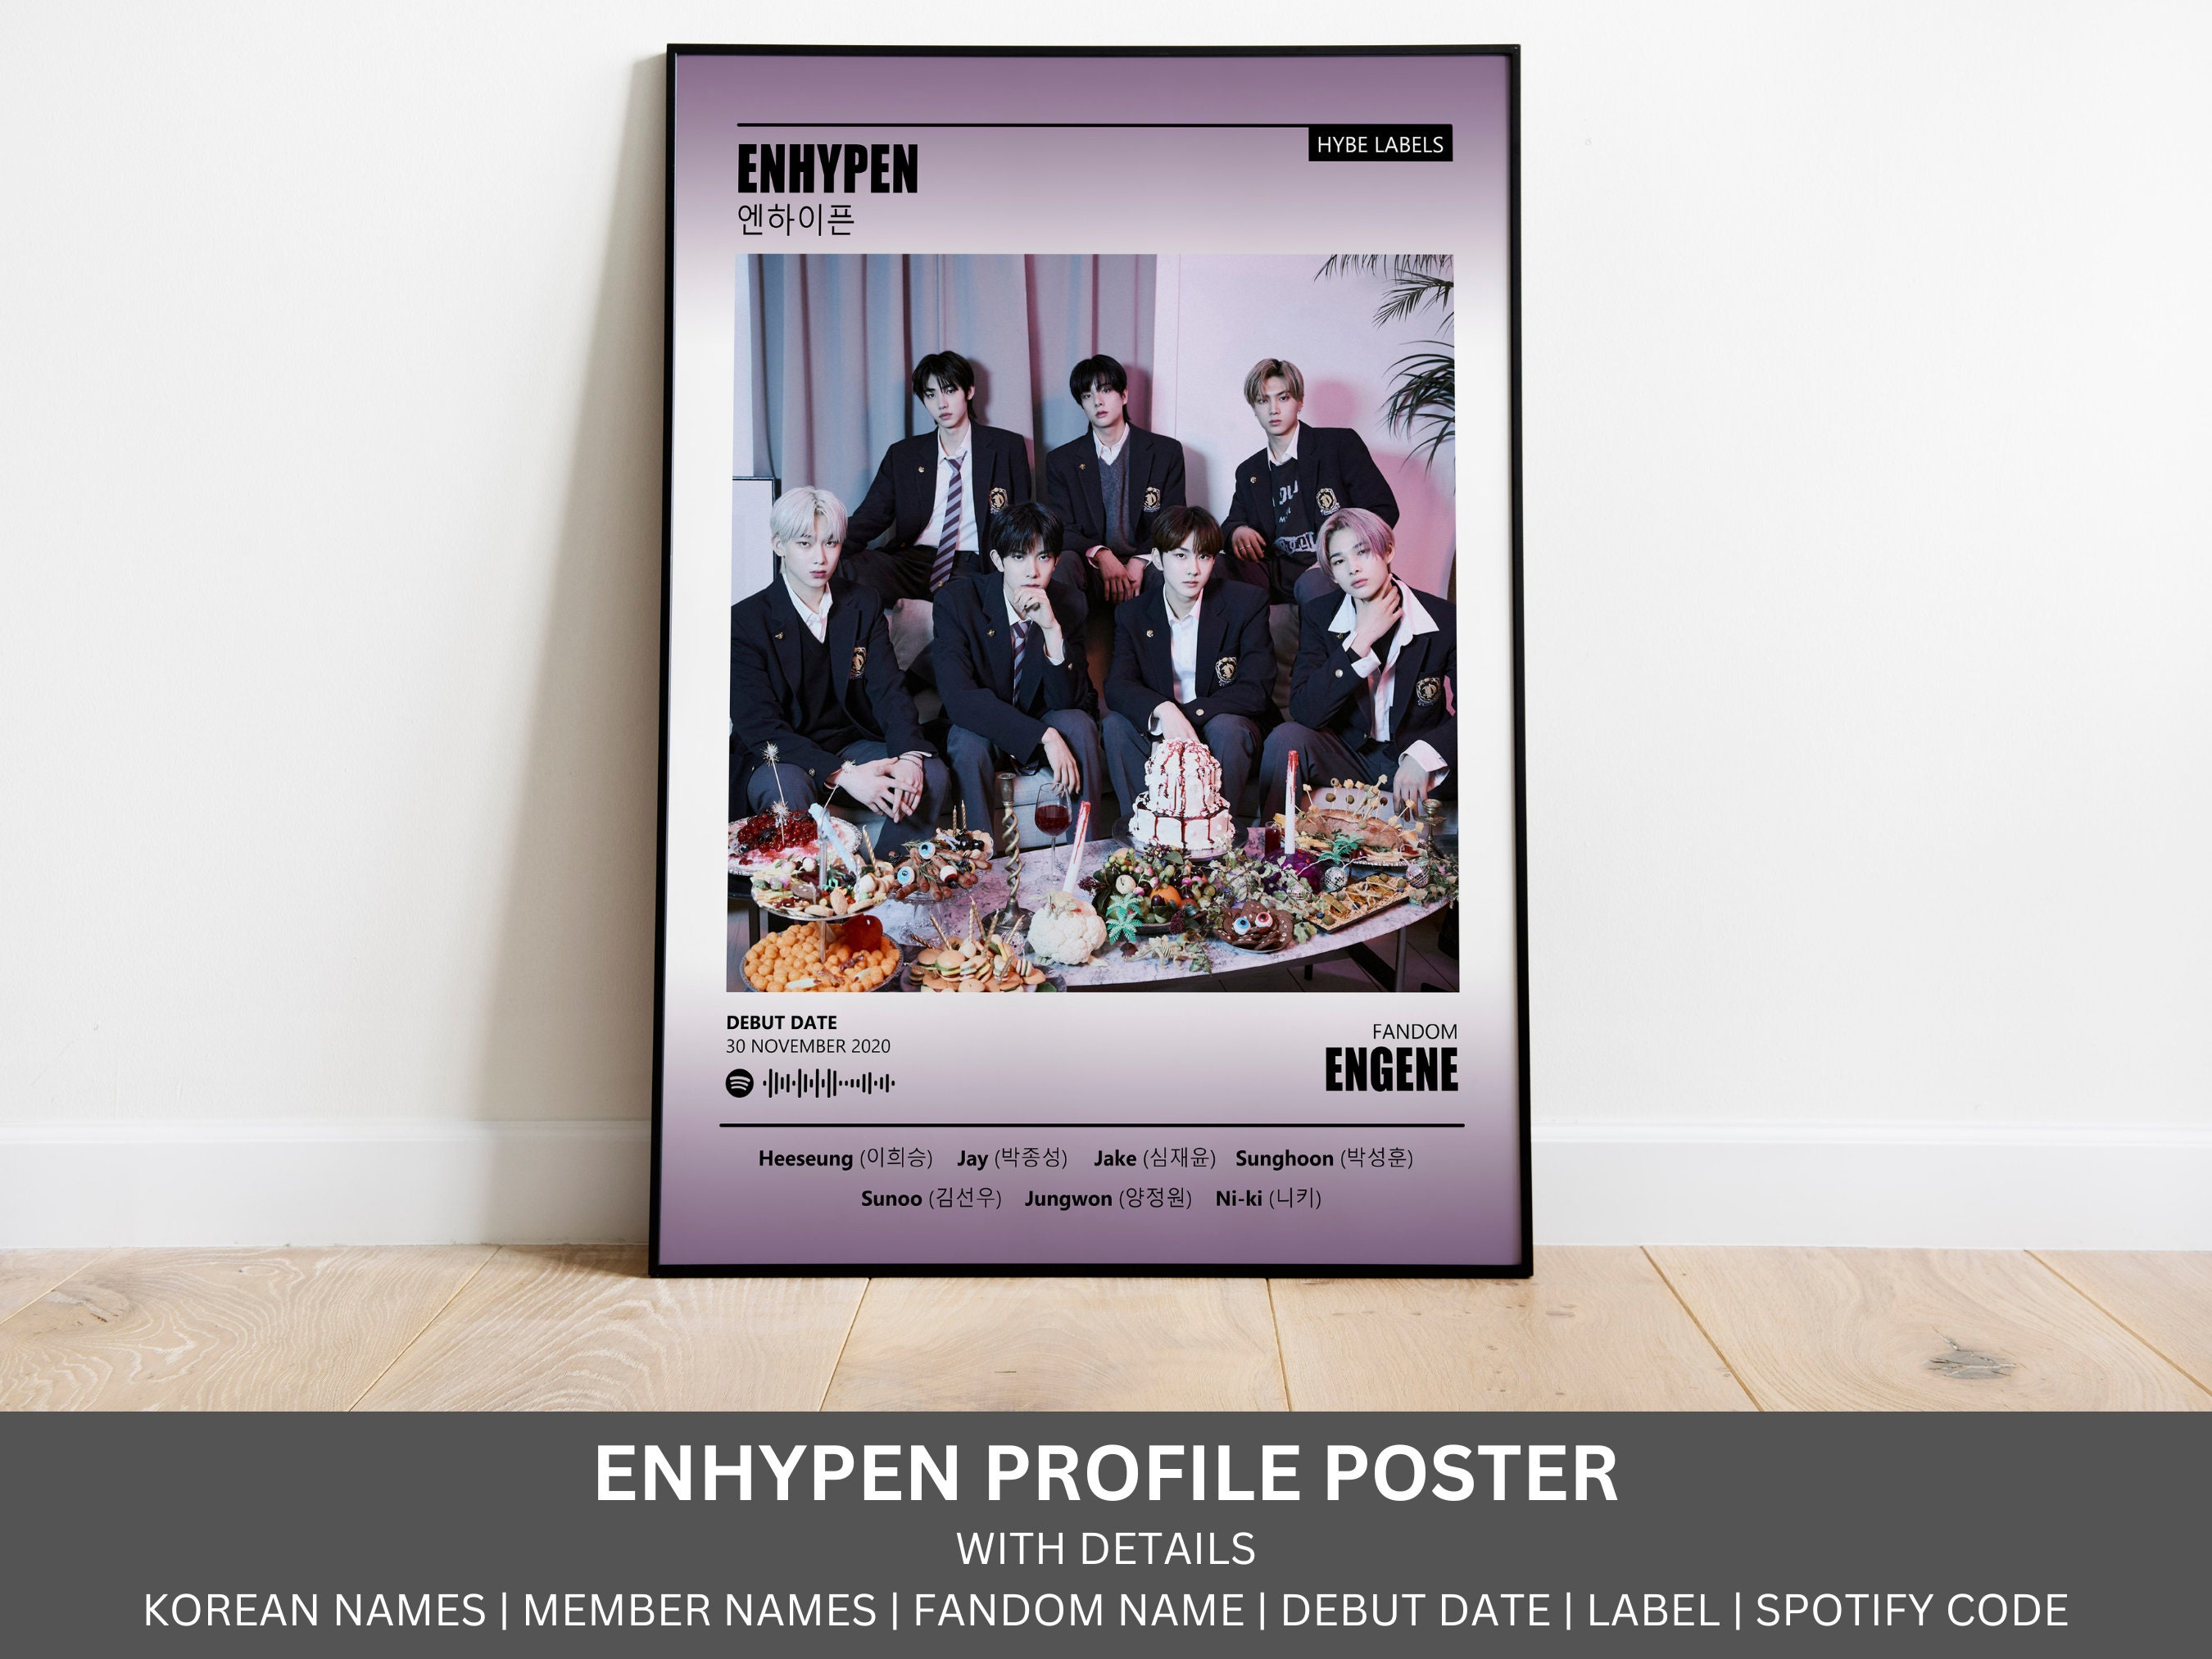 Ateez retro✨  Kpop posters, Retro poster, Pop posters